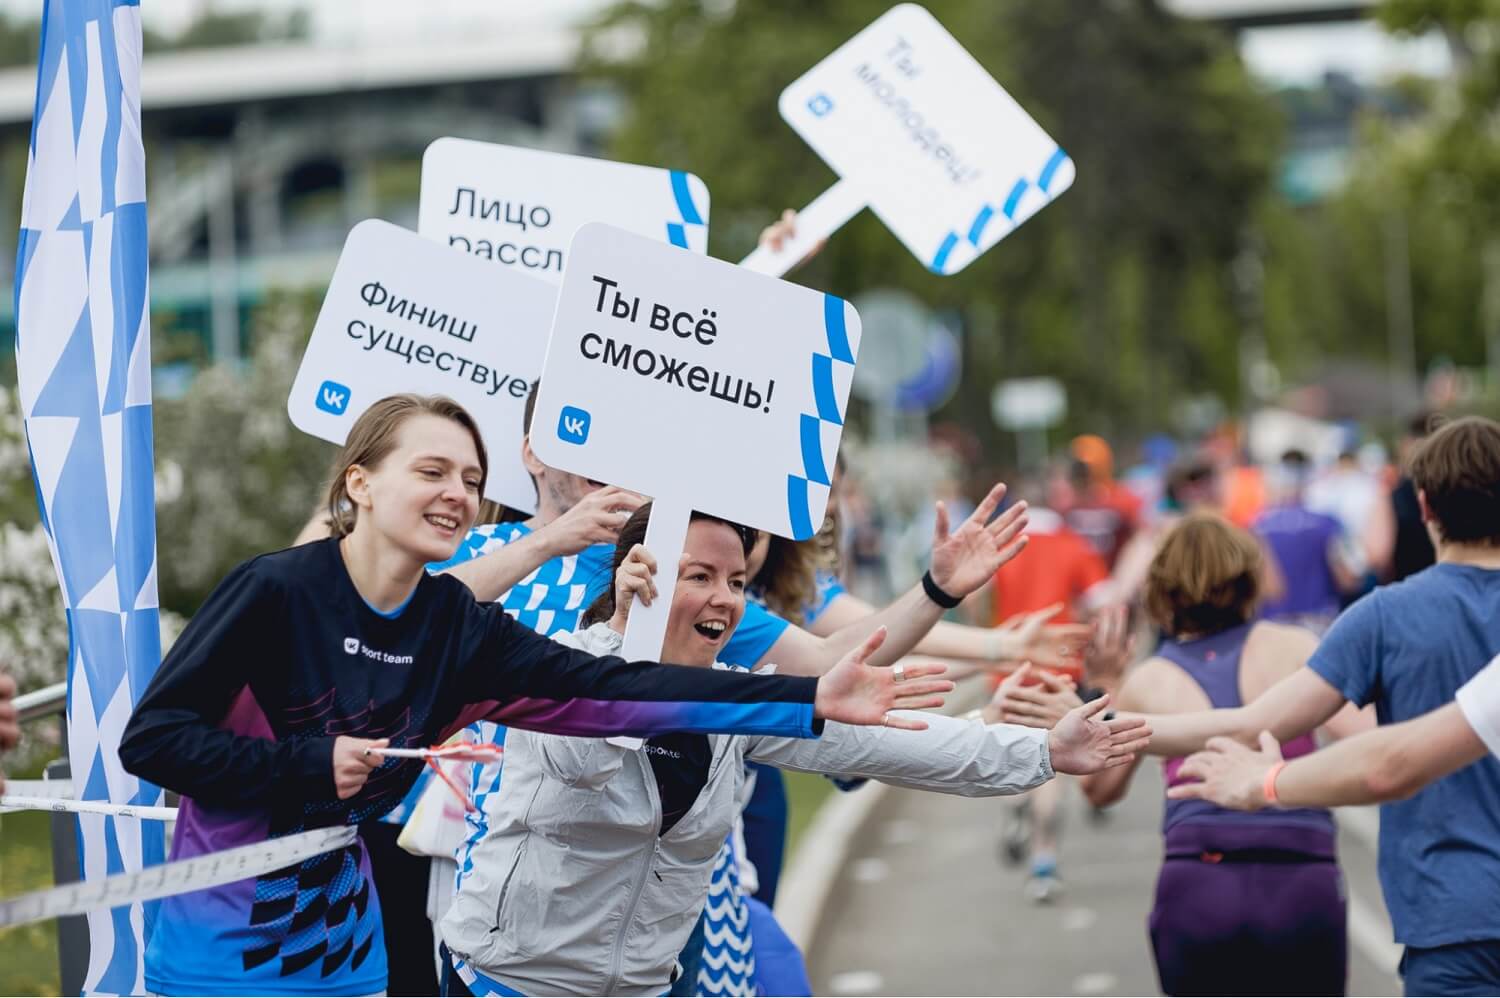 Фото с Московского марафона, который спонсировала компания VK